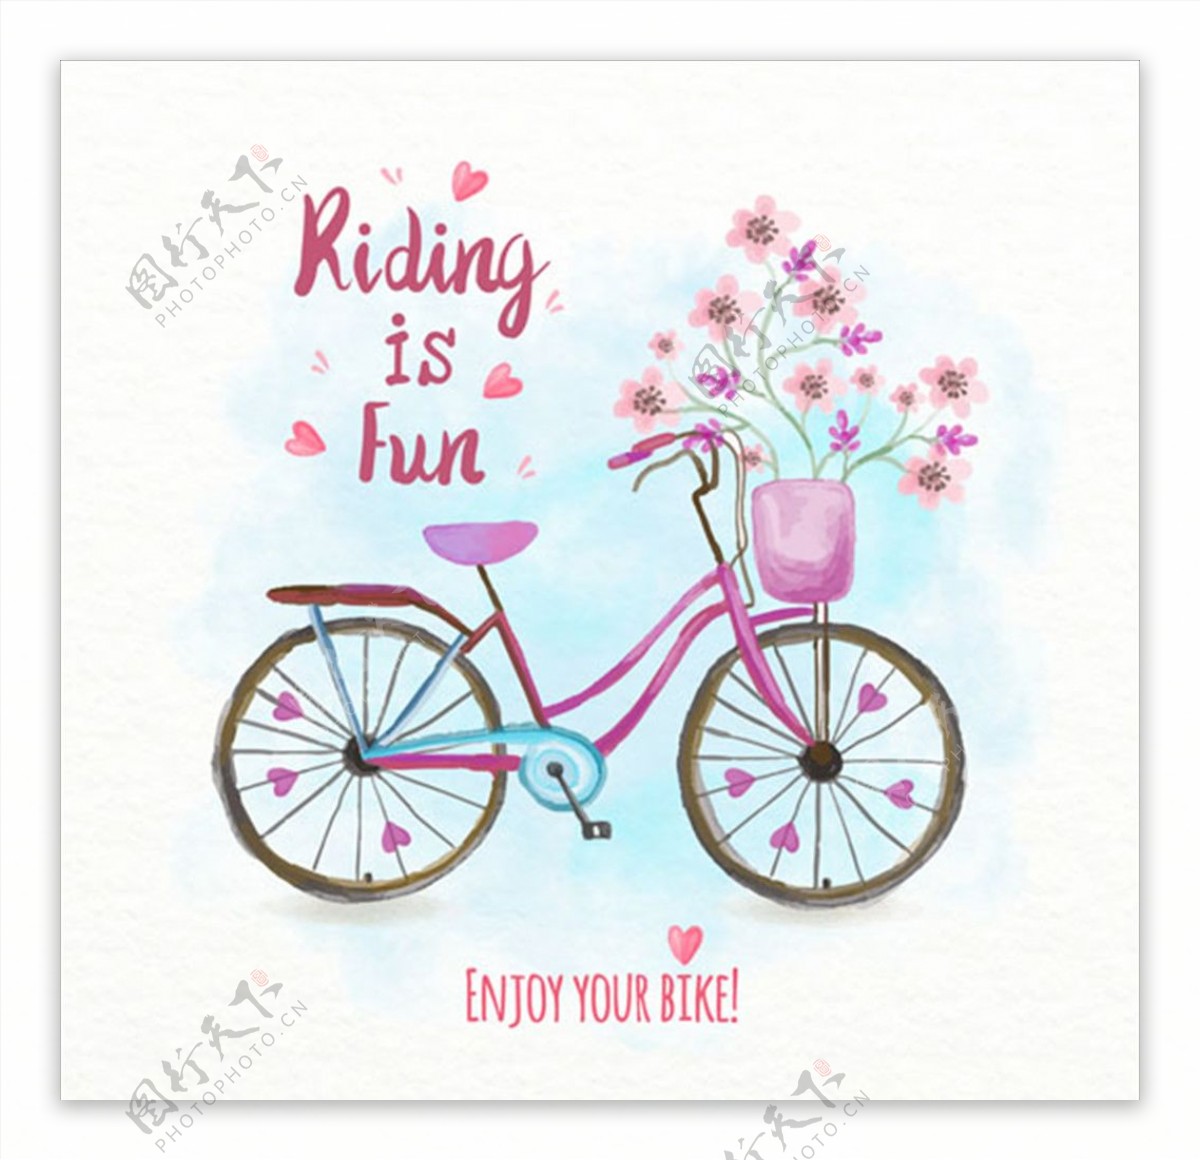 手绘水彩自行车花卉海报